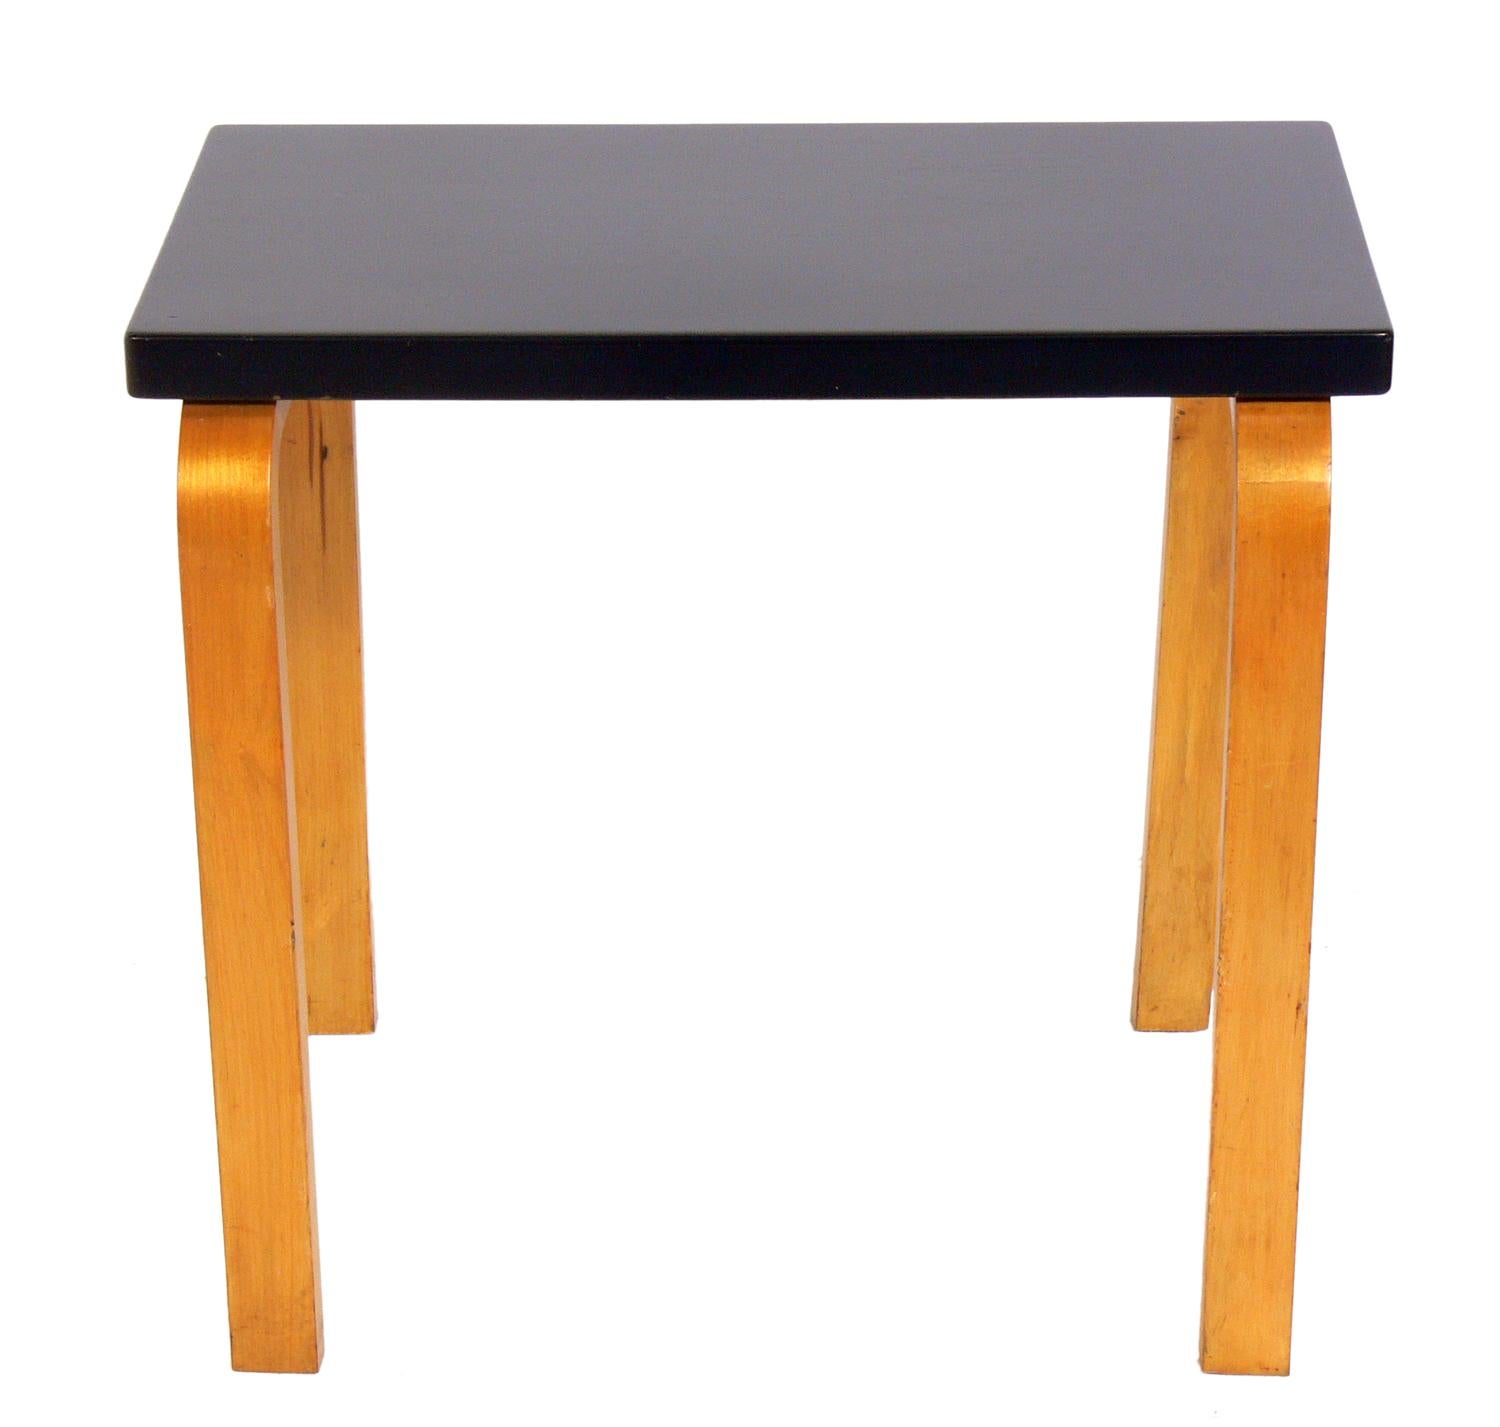 Table d'appoint en bois courbé, conçue par Alvar Aalto pour Finmar, Finlande, vers les années 1940. Exemple classique du design moderne danois.